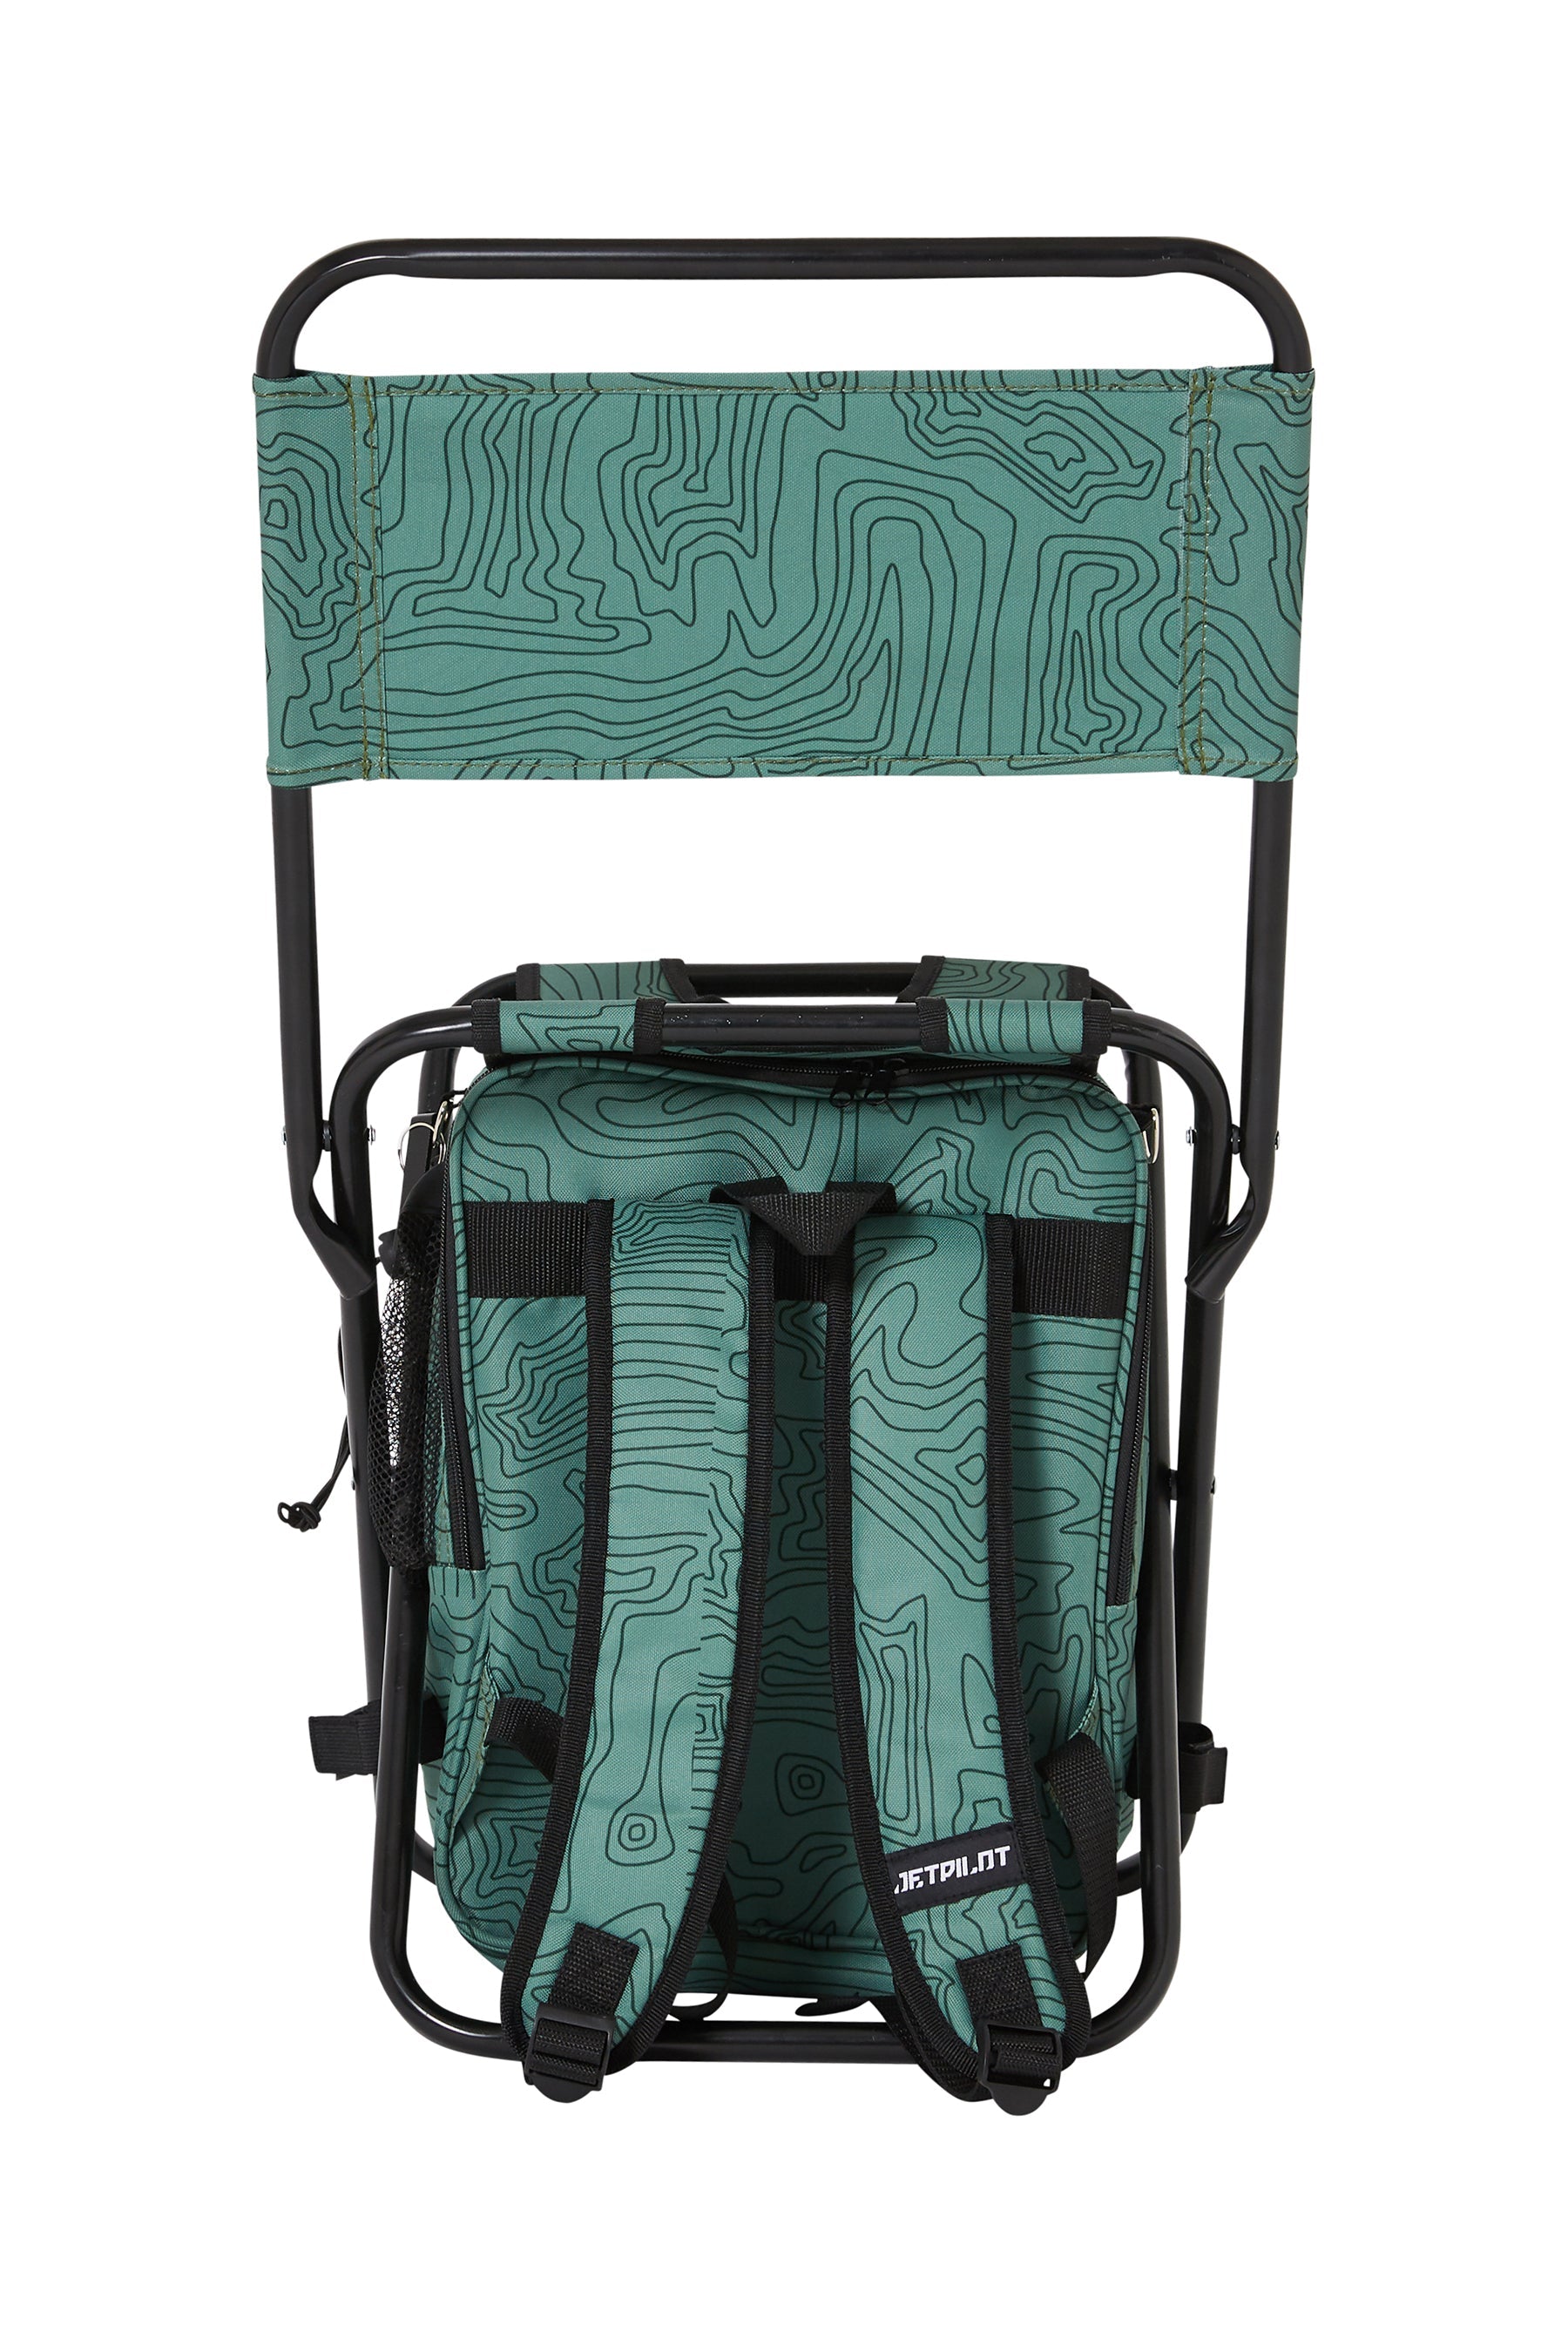 Jetpilot Back Rest Chilled Seat Bag - Sage Lifestyle 5